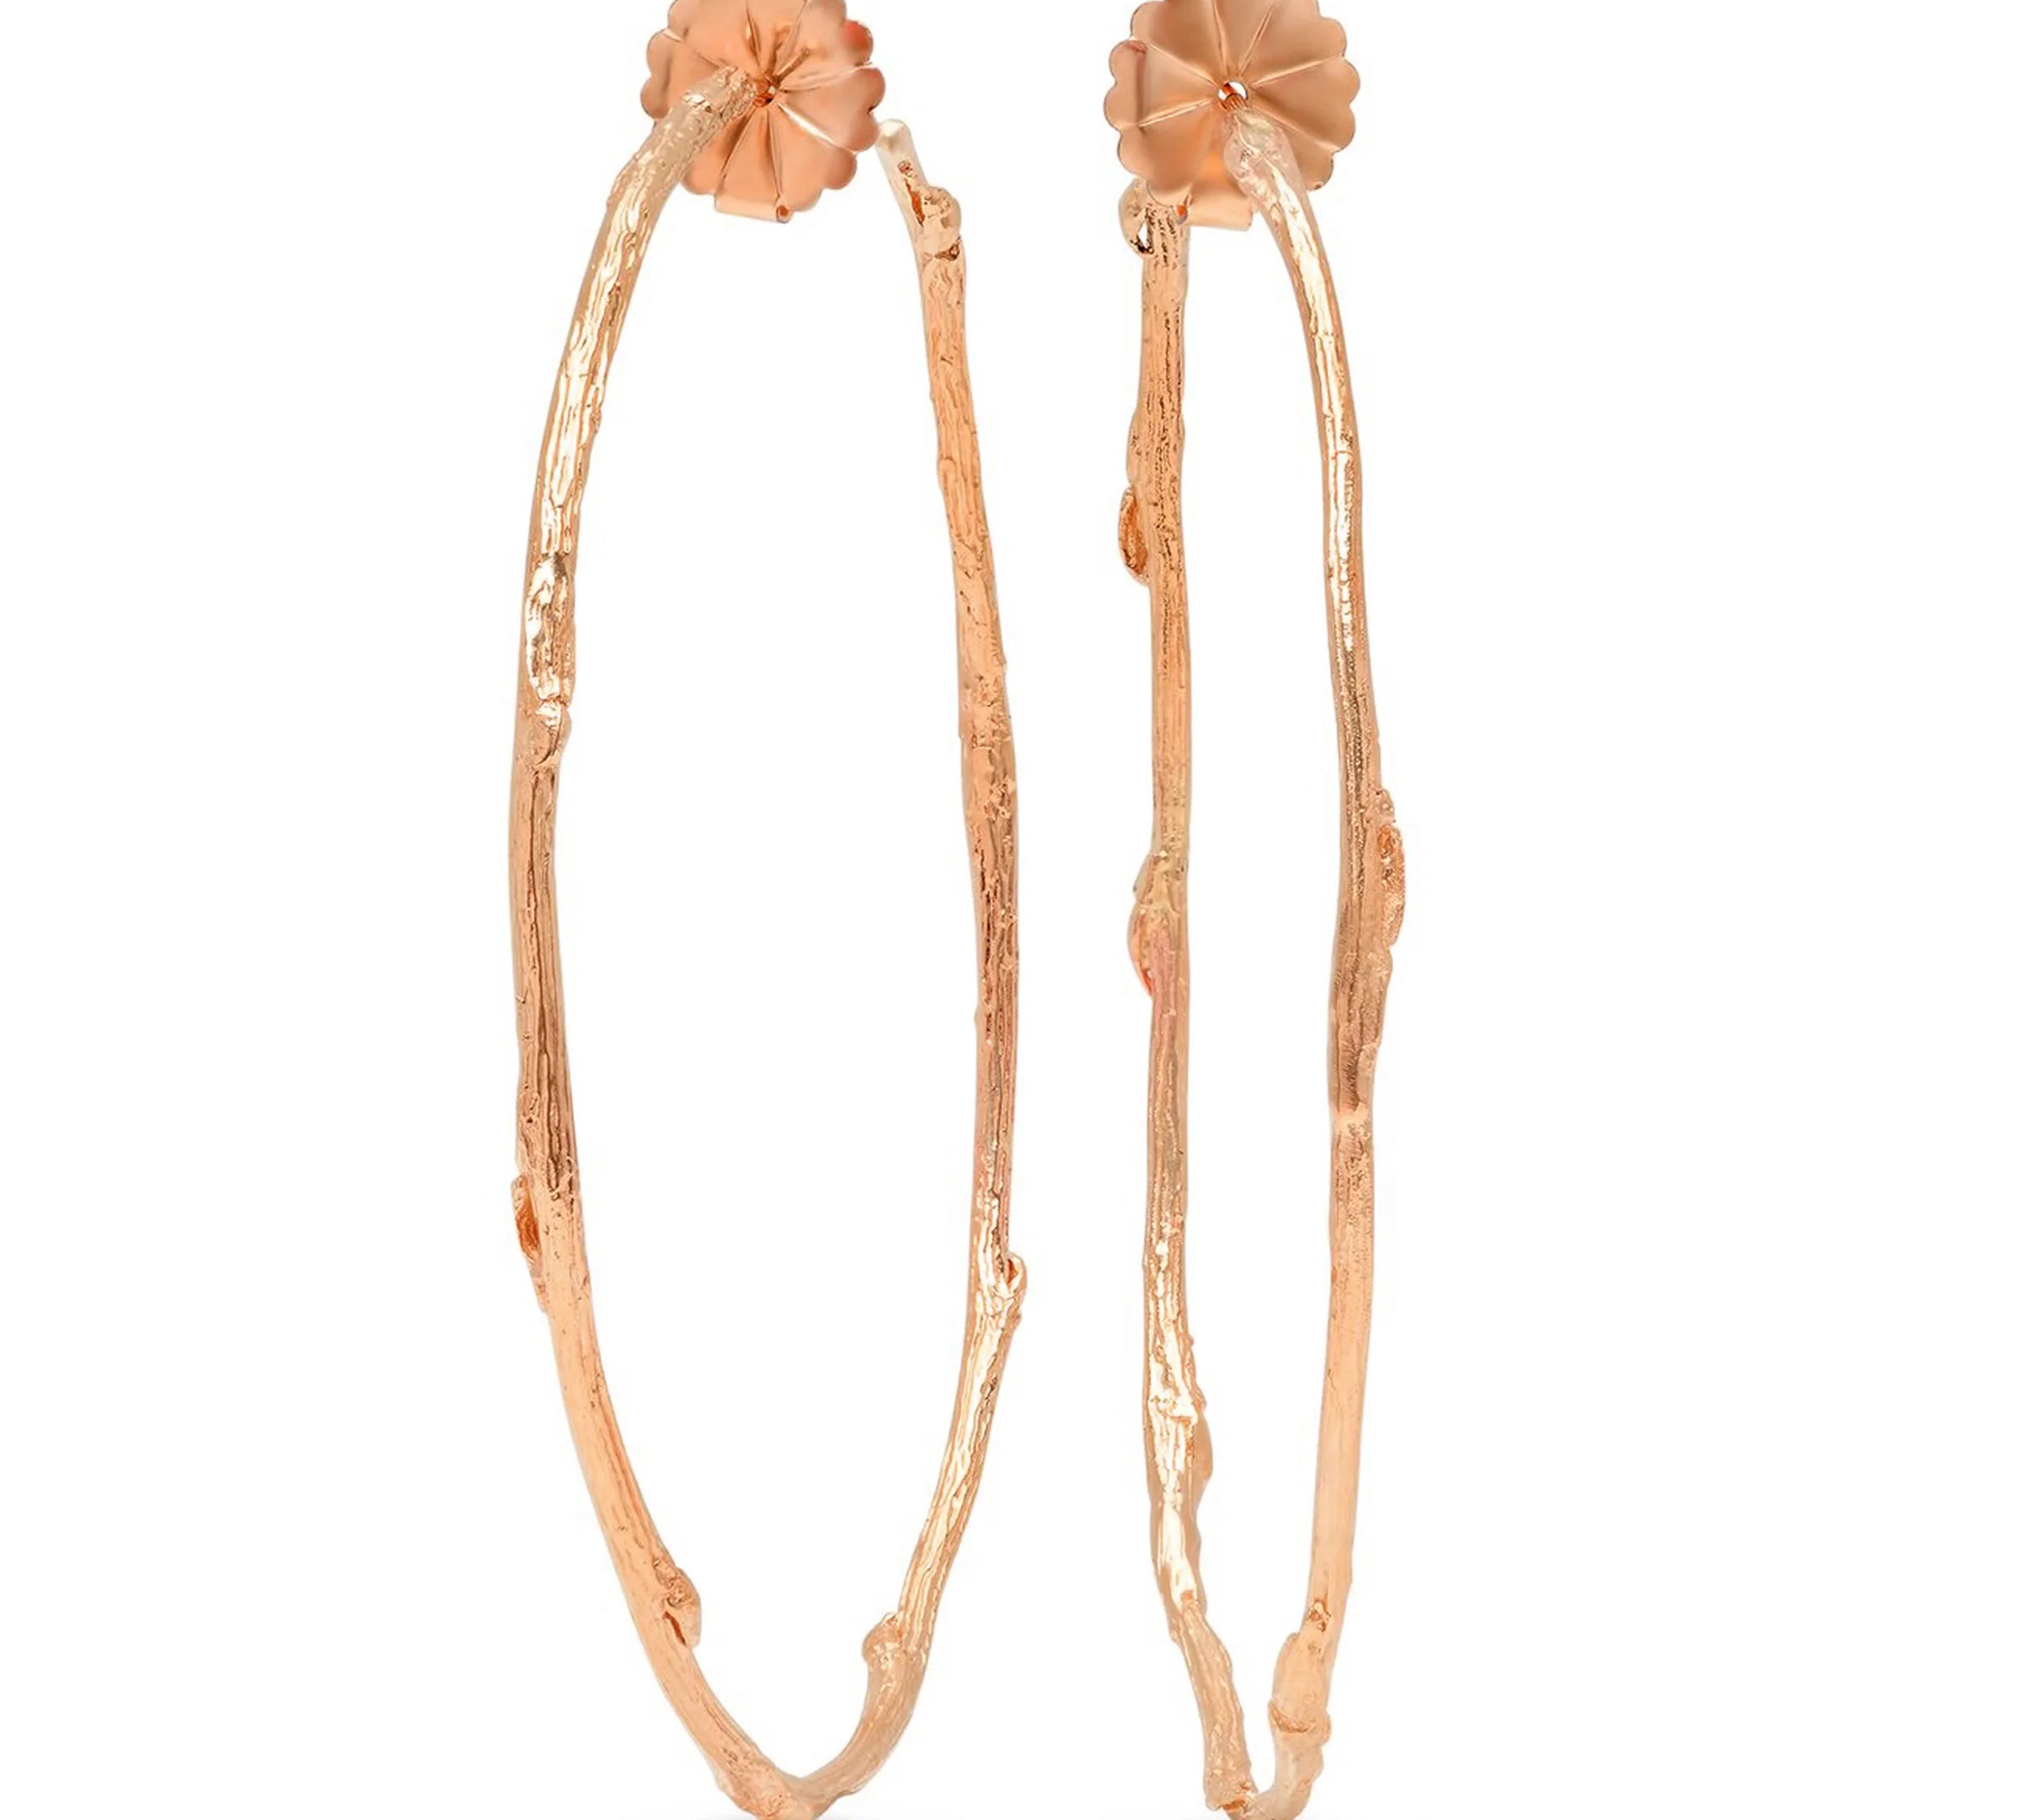 Large Round Willlow Hoop Earrings Hoops Earrings Elisabeth Bell Jewelry Rose Gold  